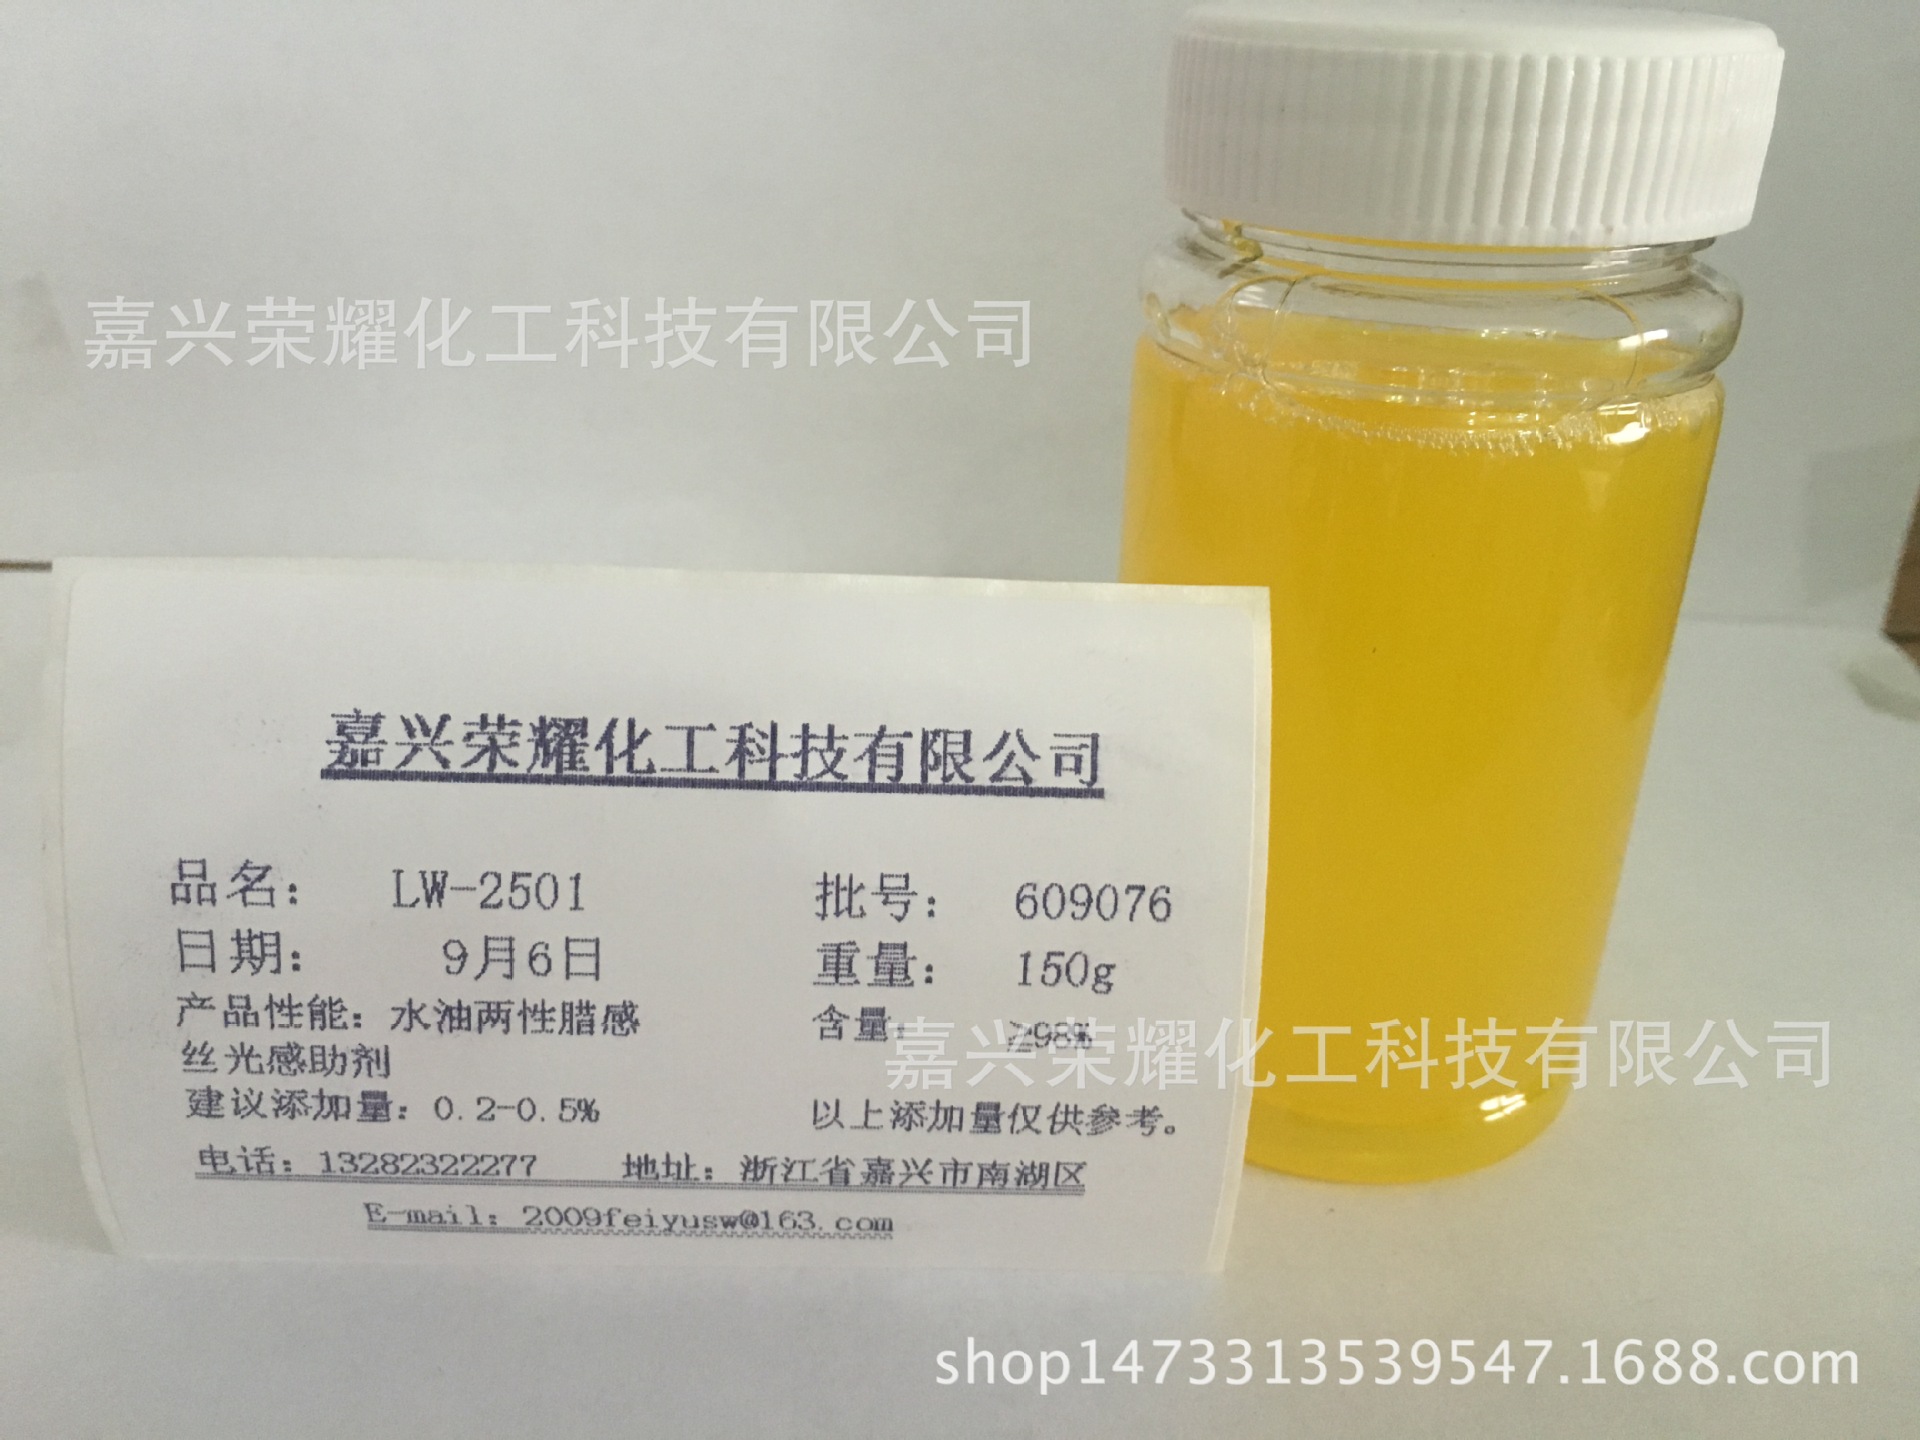 水性材料添加型助剂 水油两性腊感丝光感助剂 LW-2501